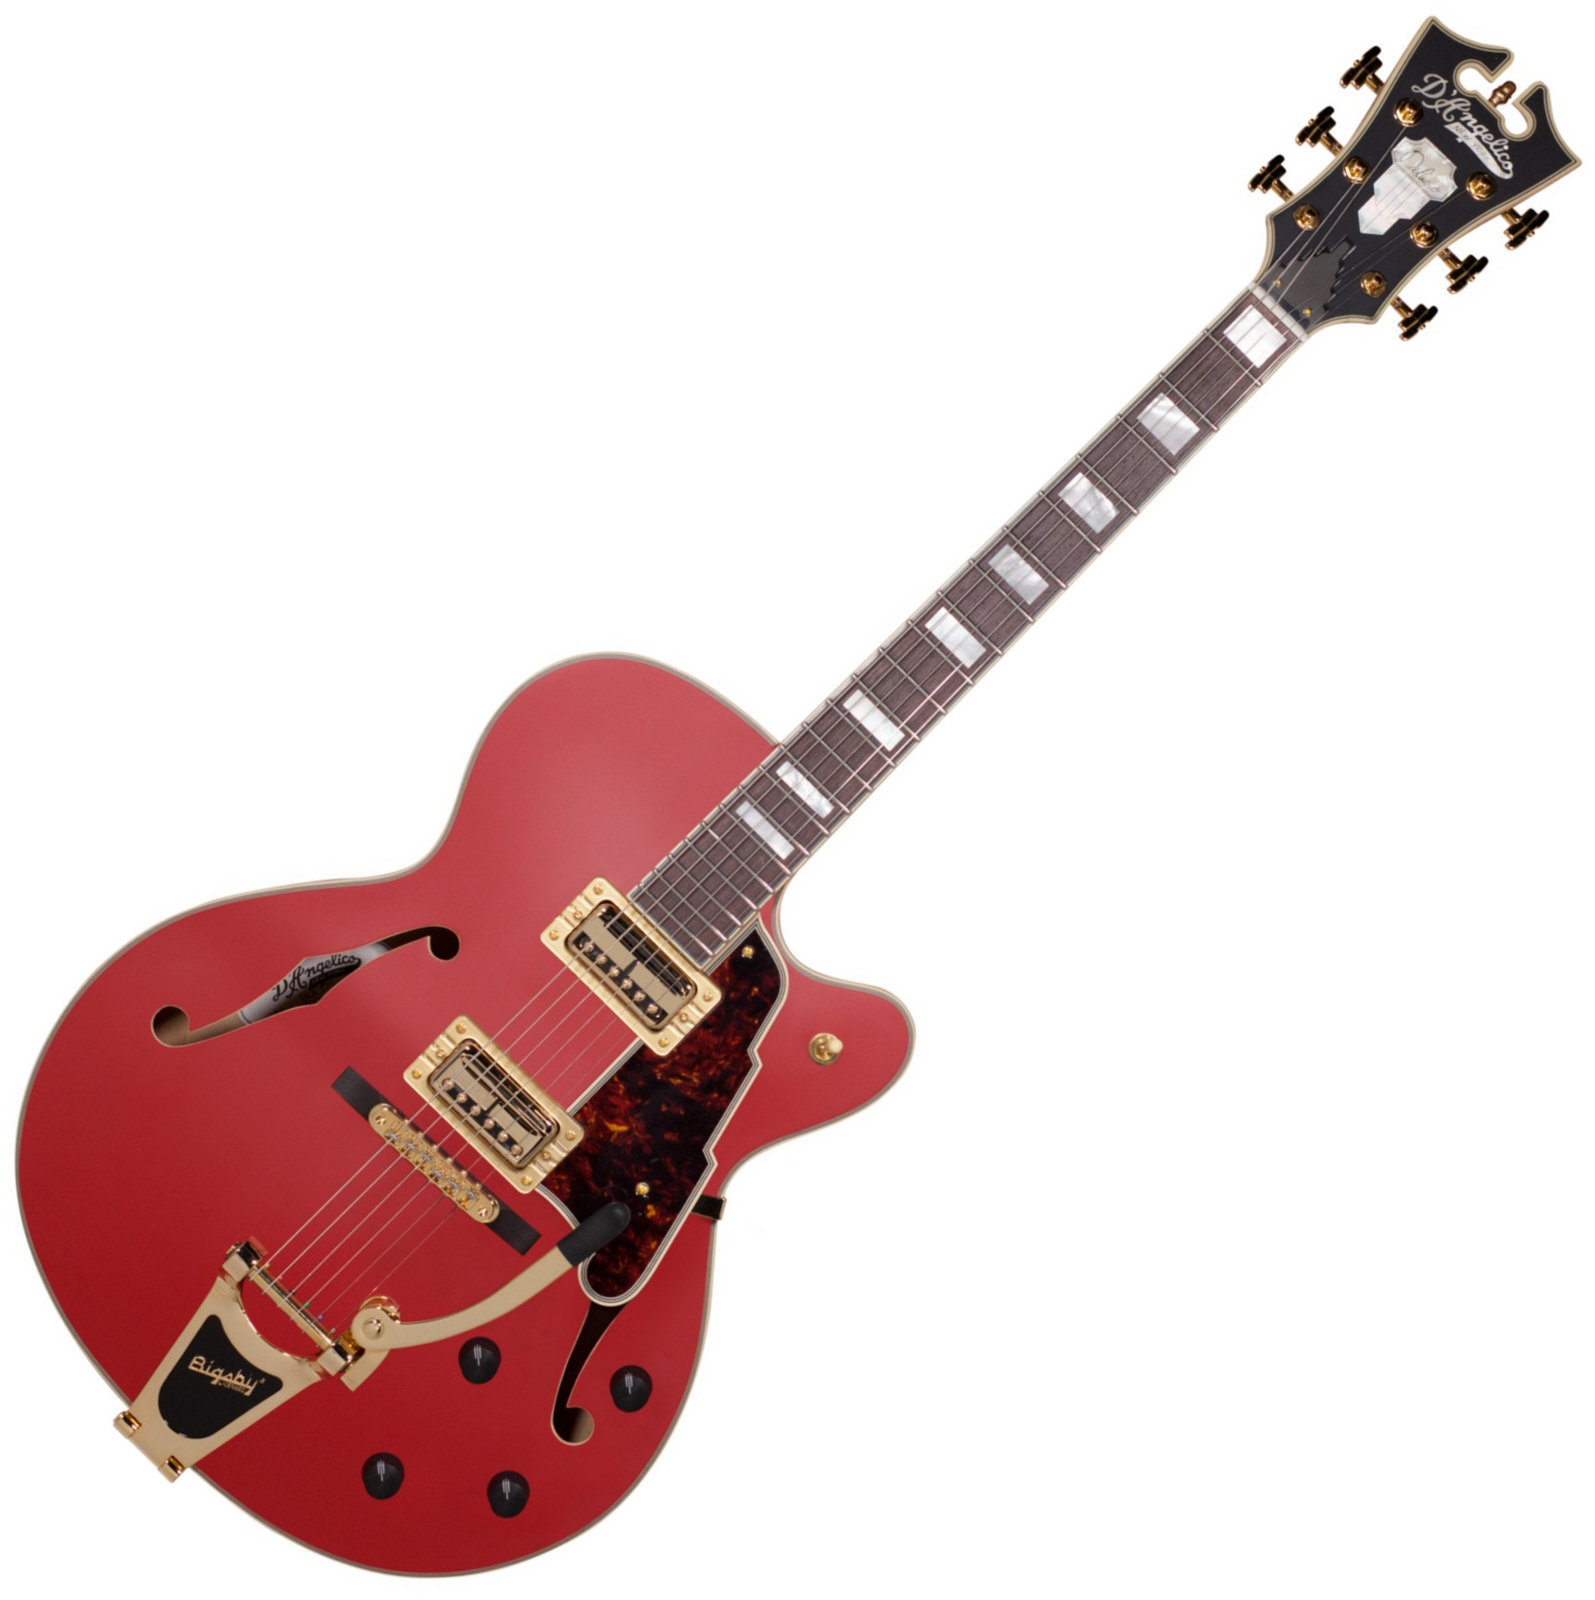 Semiakustická kytara D'Angelico Deluxe 175 Matte Cherry